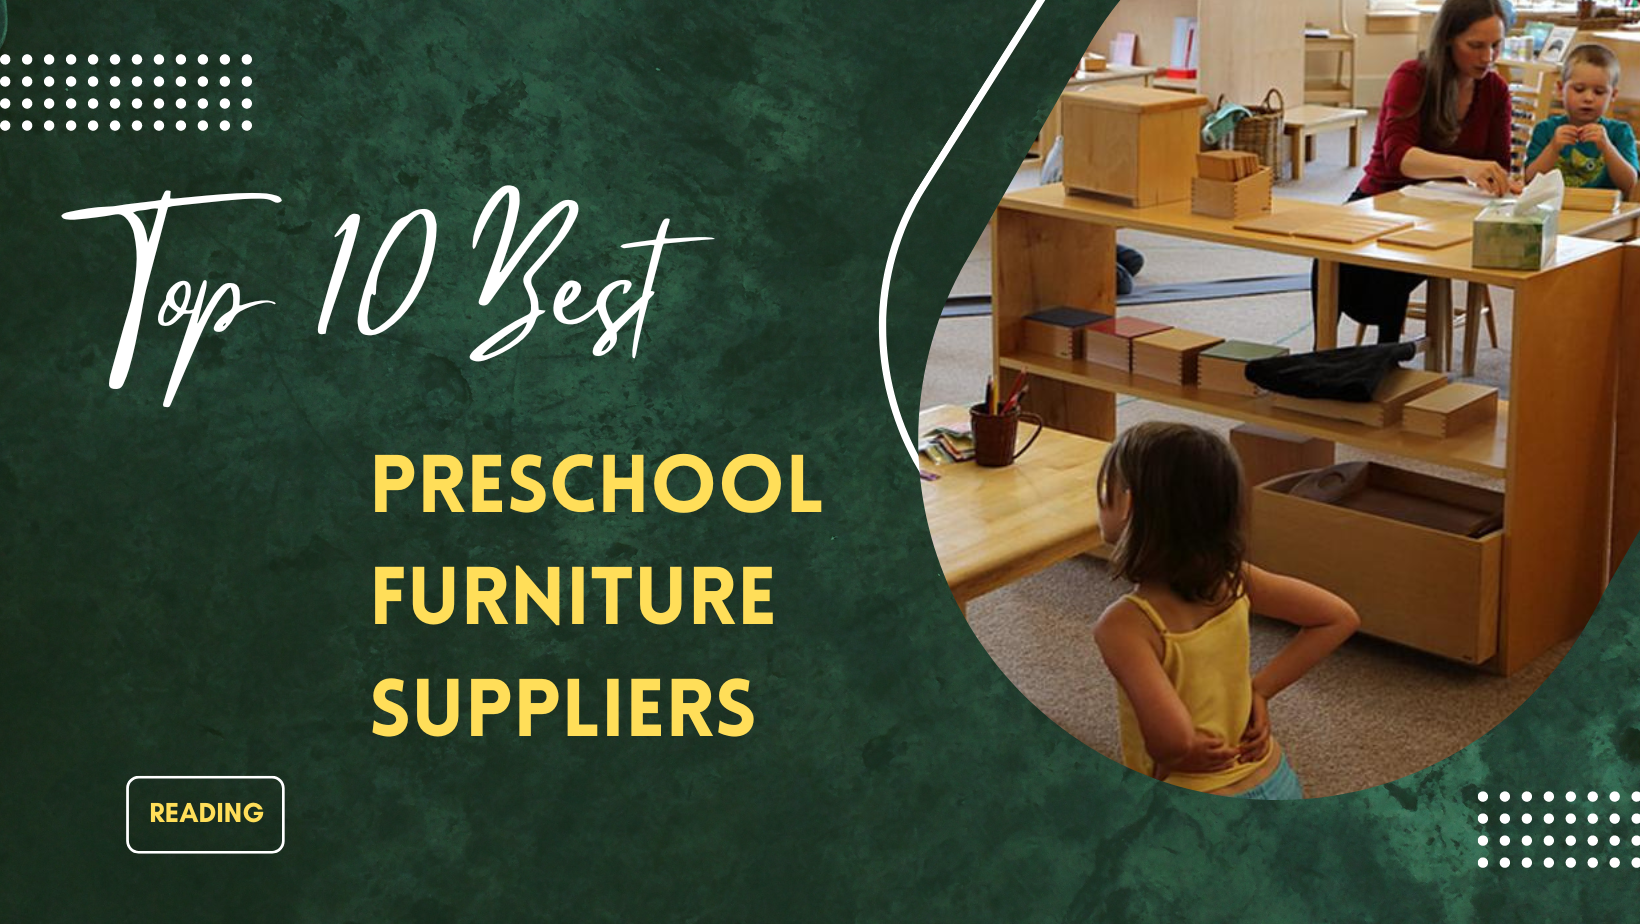 Top 10 Best Preschool Furniture Suppliers